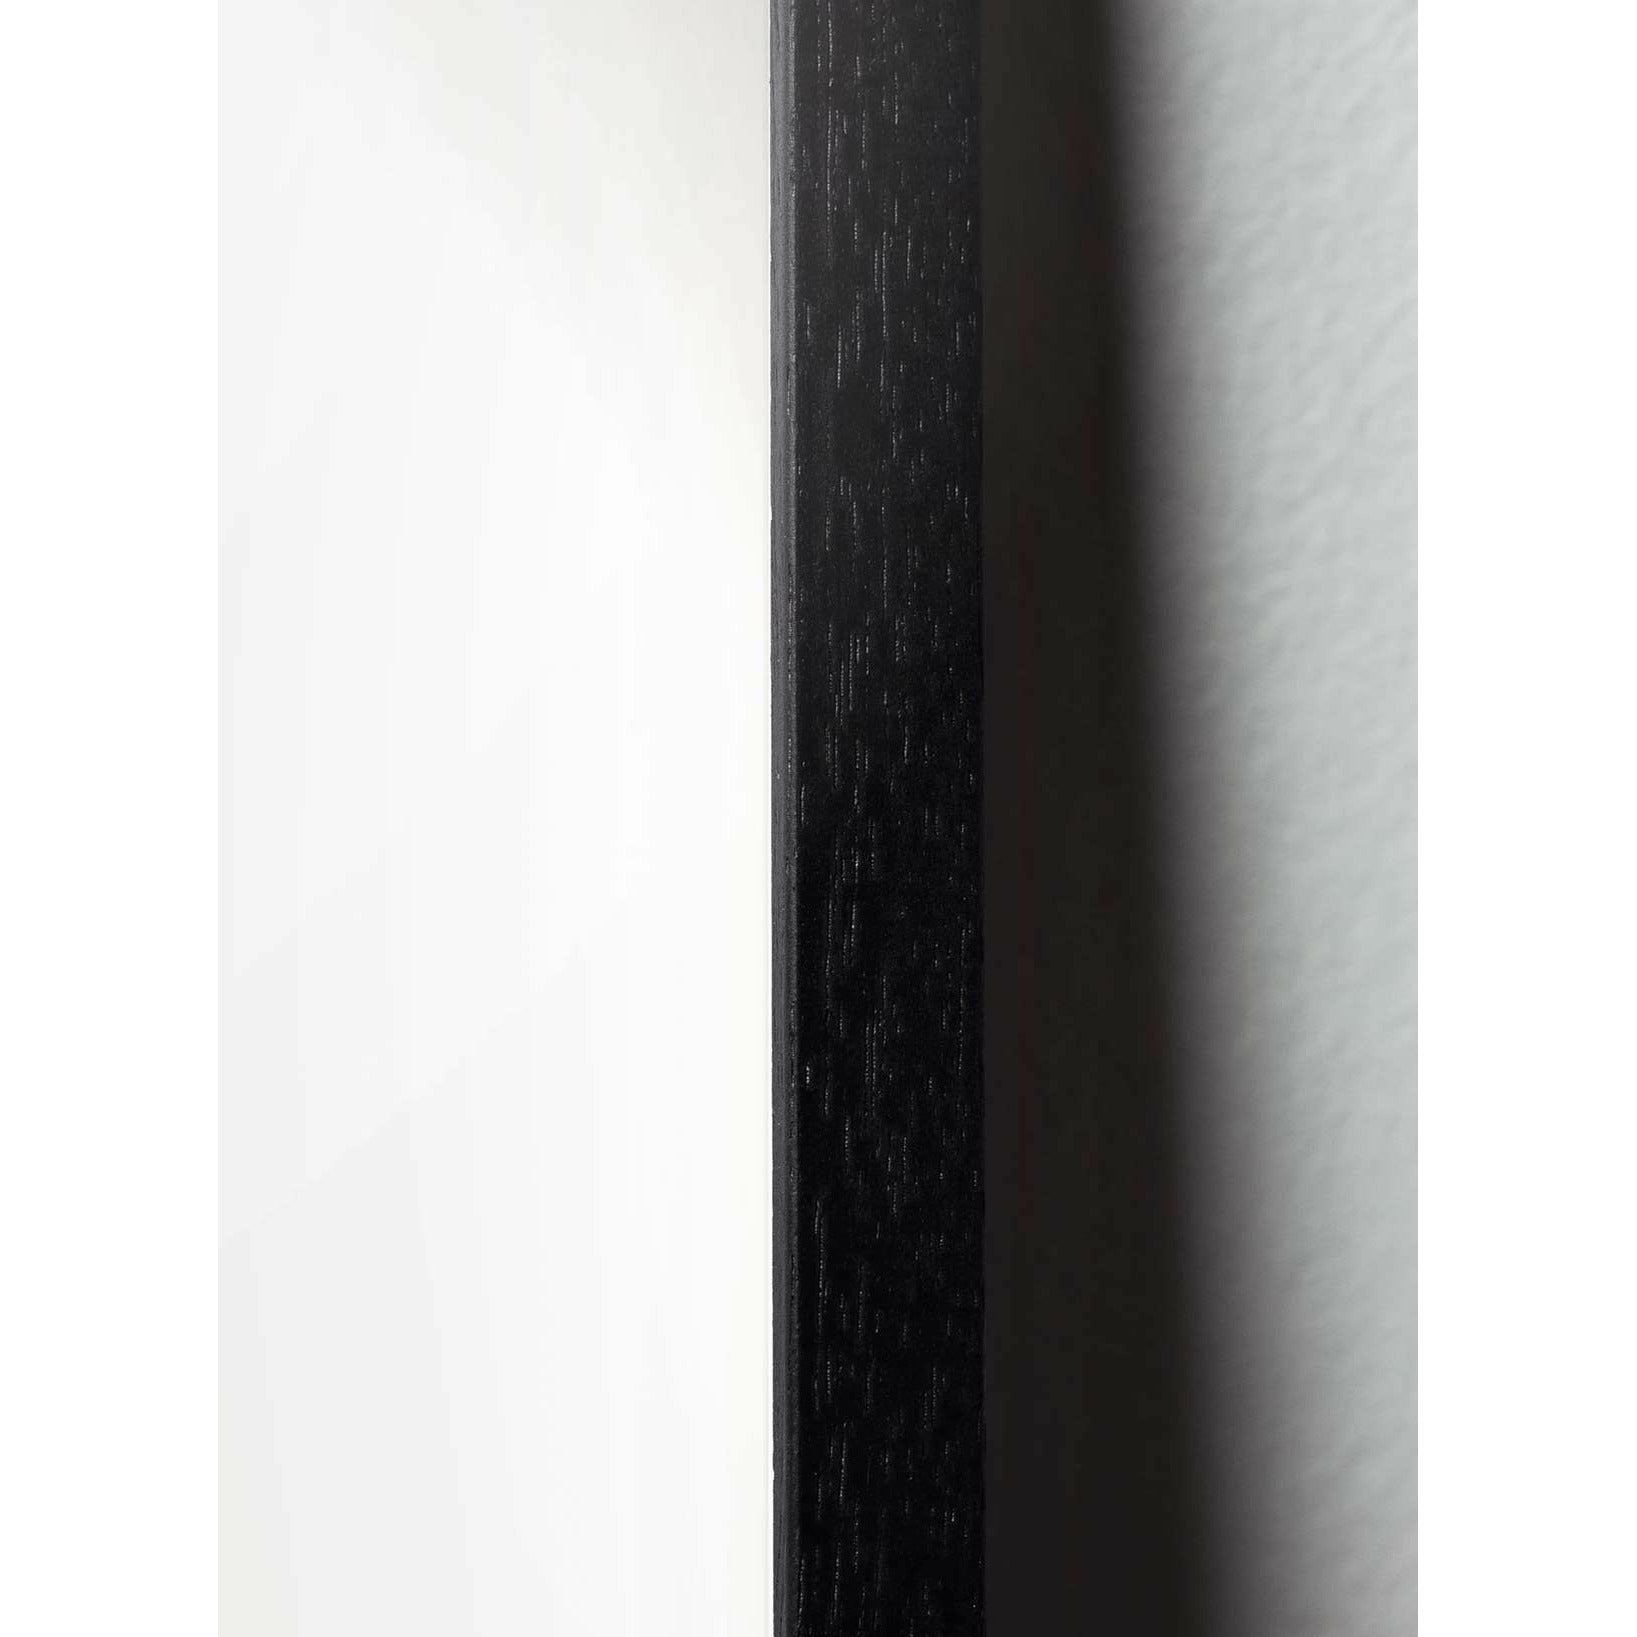 Brainchild Ant Line Poster, Rahmen aus schwarz lackiertem Holz 50x70 cm, weißer Hintergrund